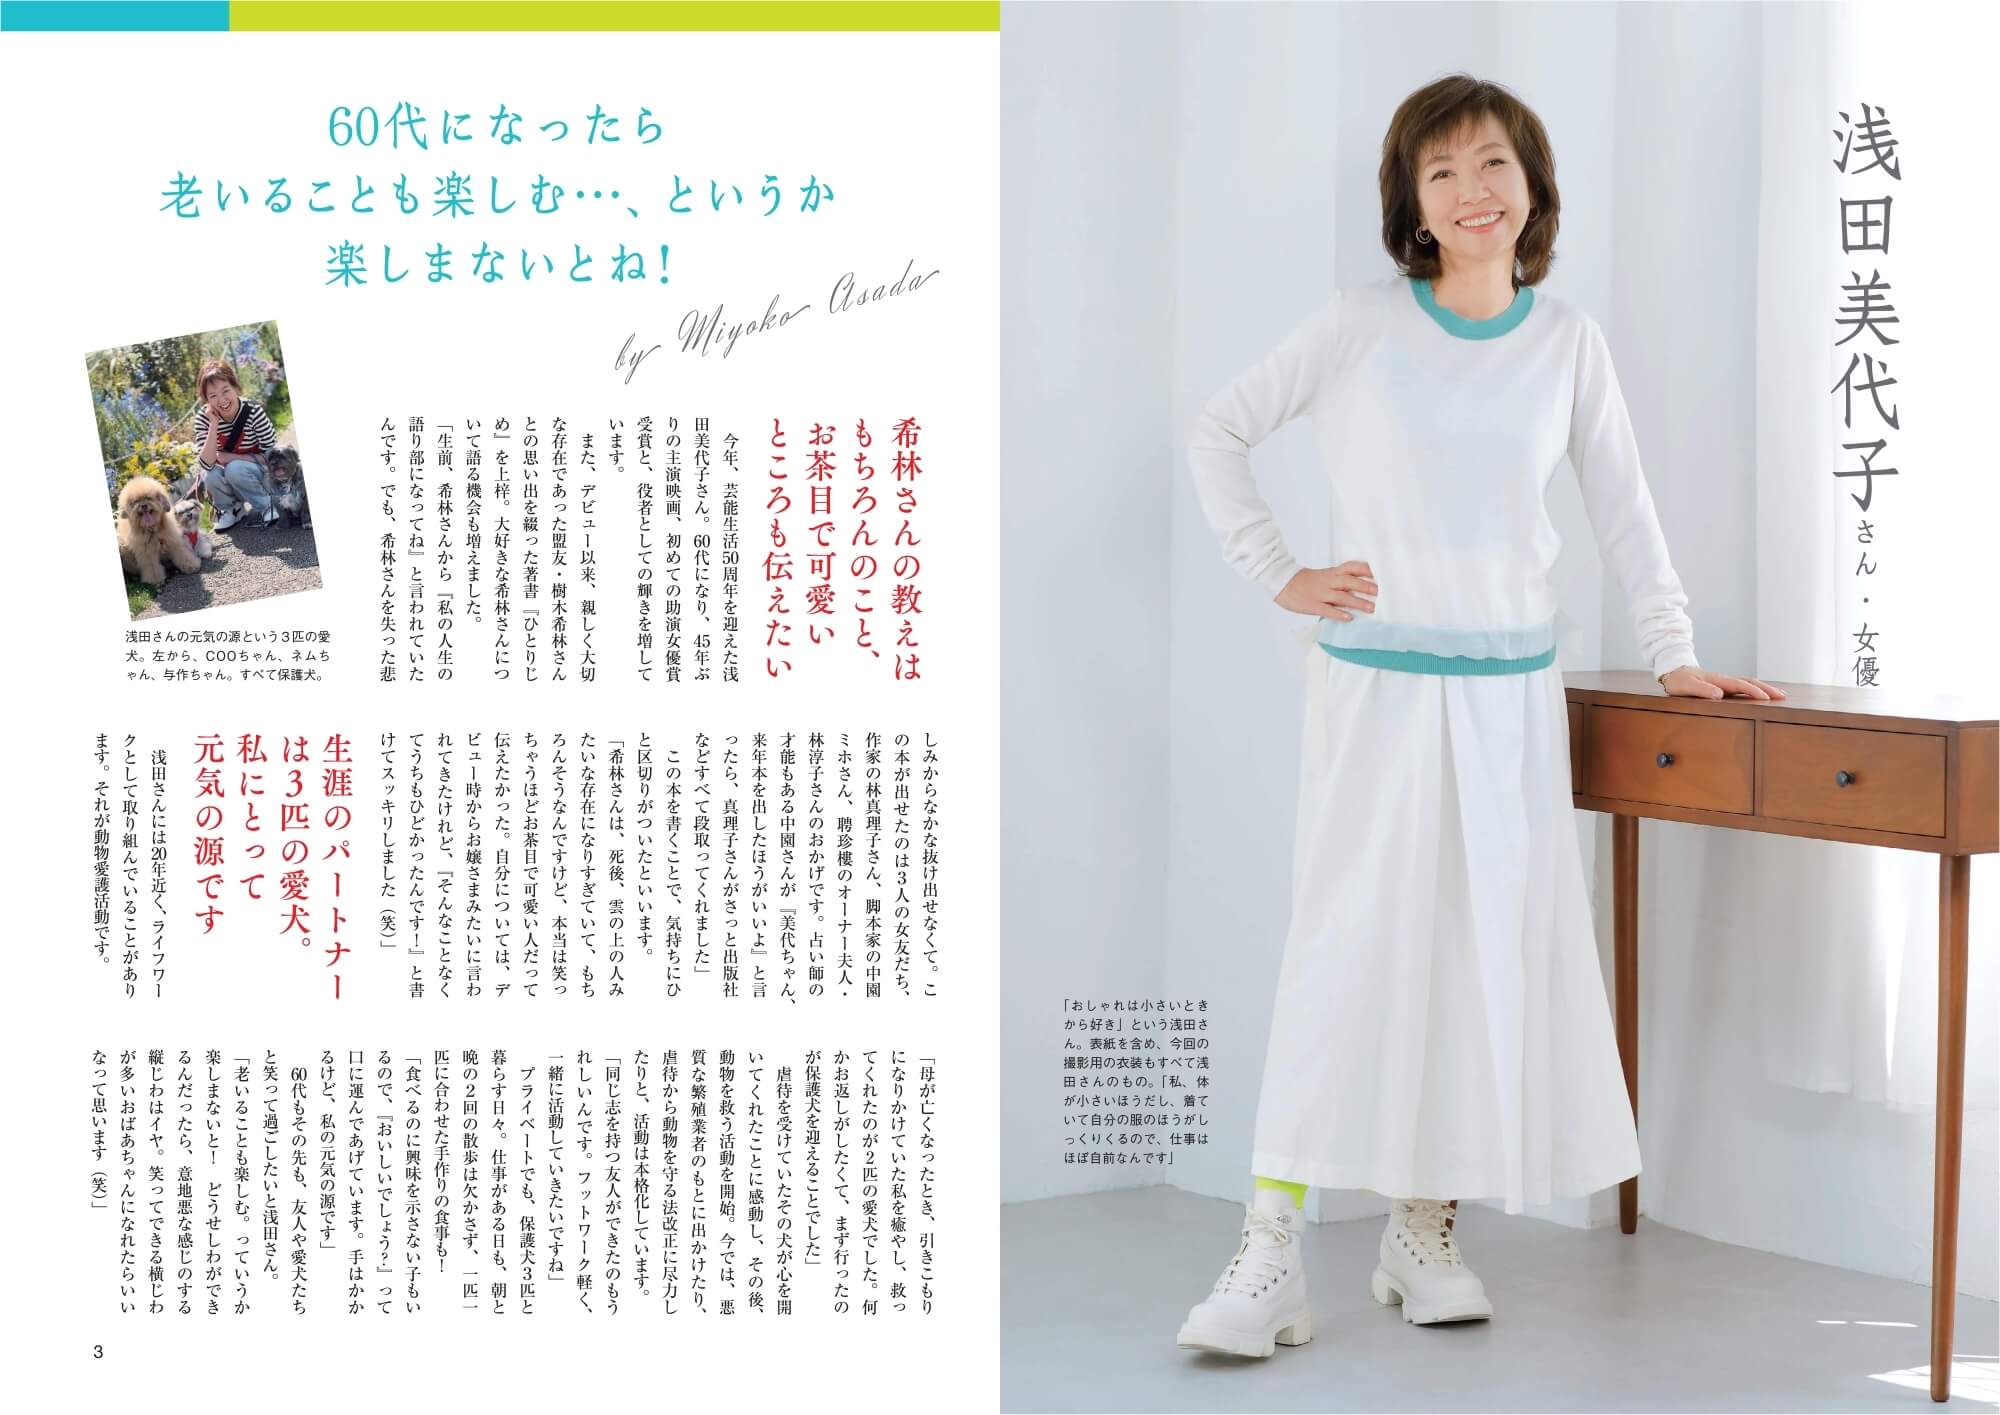 巻頭インタビューは俳優・浅田美代子さん。3匹の愛犬との暮らし、家を持つことで薄れた「ものへの執着」など、60代での気づきを語っています。　紙面